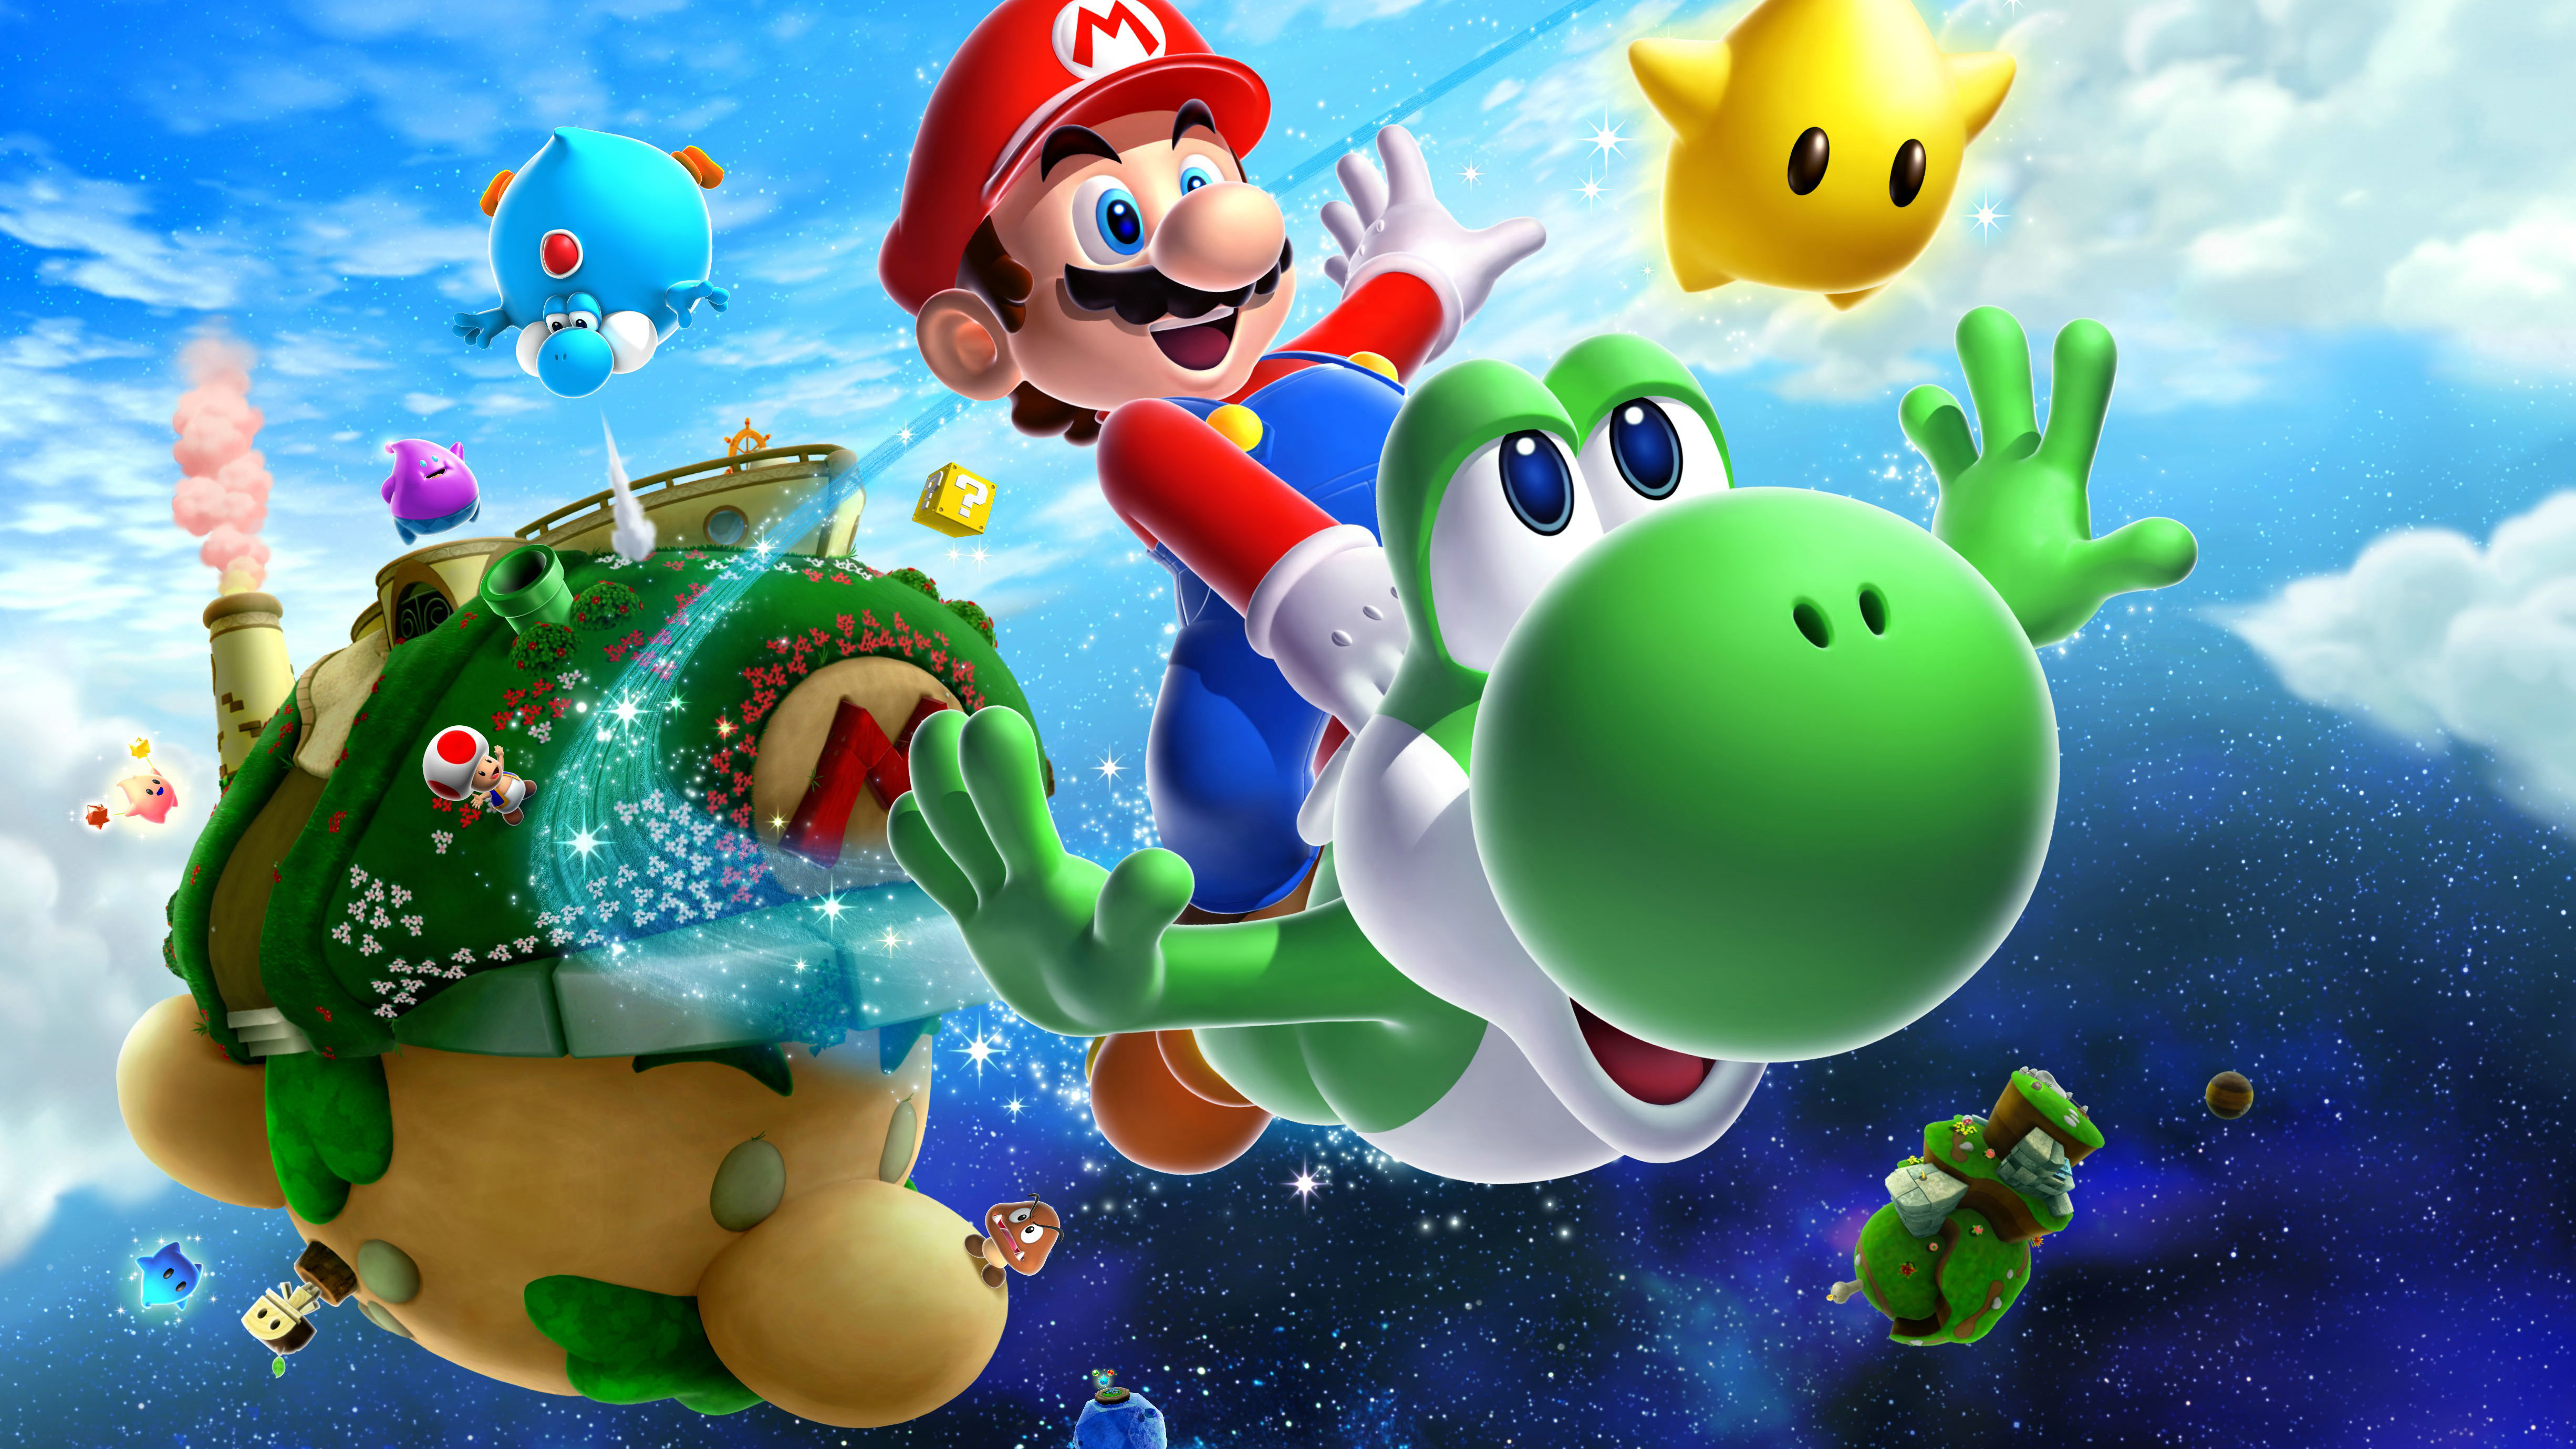 Super Mario Galaxy 2 - trò chơi HD, hình nền, hình ảnh, nền tảng: Với đồ họa HD, trò chơi siêu đẹp và những hình nền, hình ảnh cực chất, Super Mario Galaxy 2 là trò chơi tuyệt vời và hoàn hảo để giải trí hoặc thư giãn.